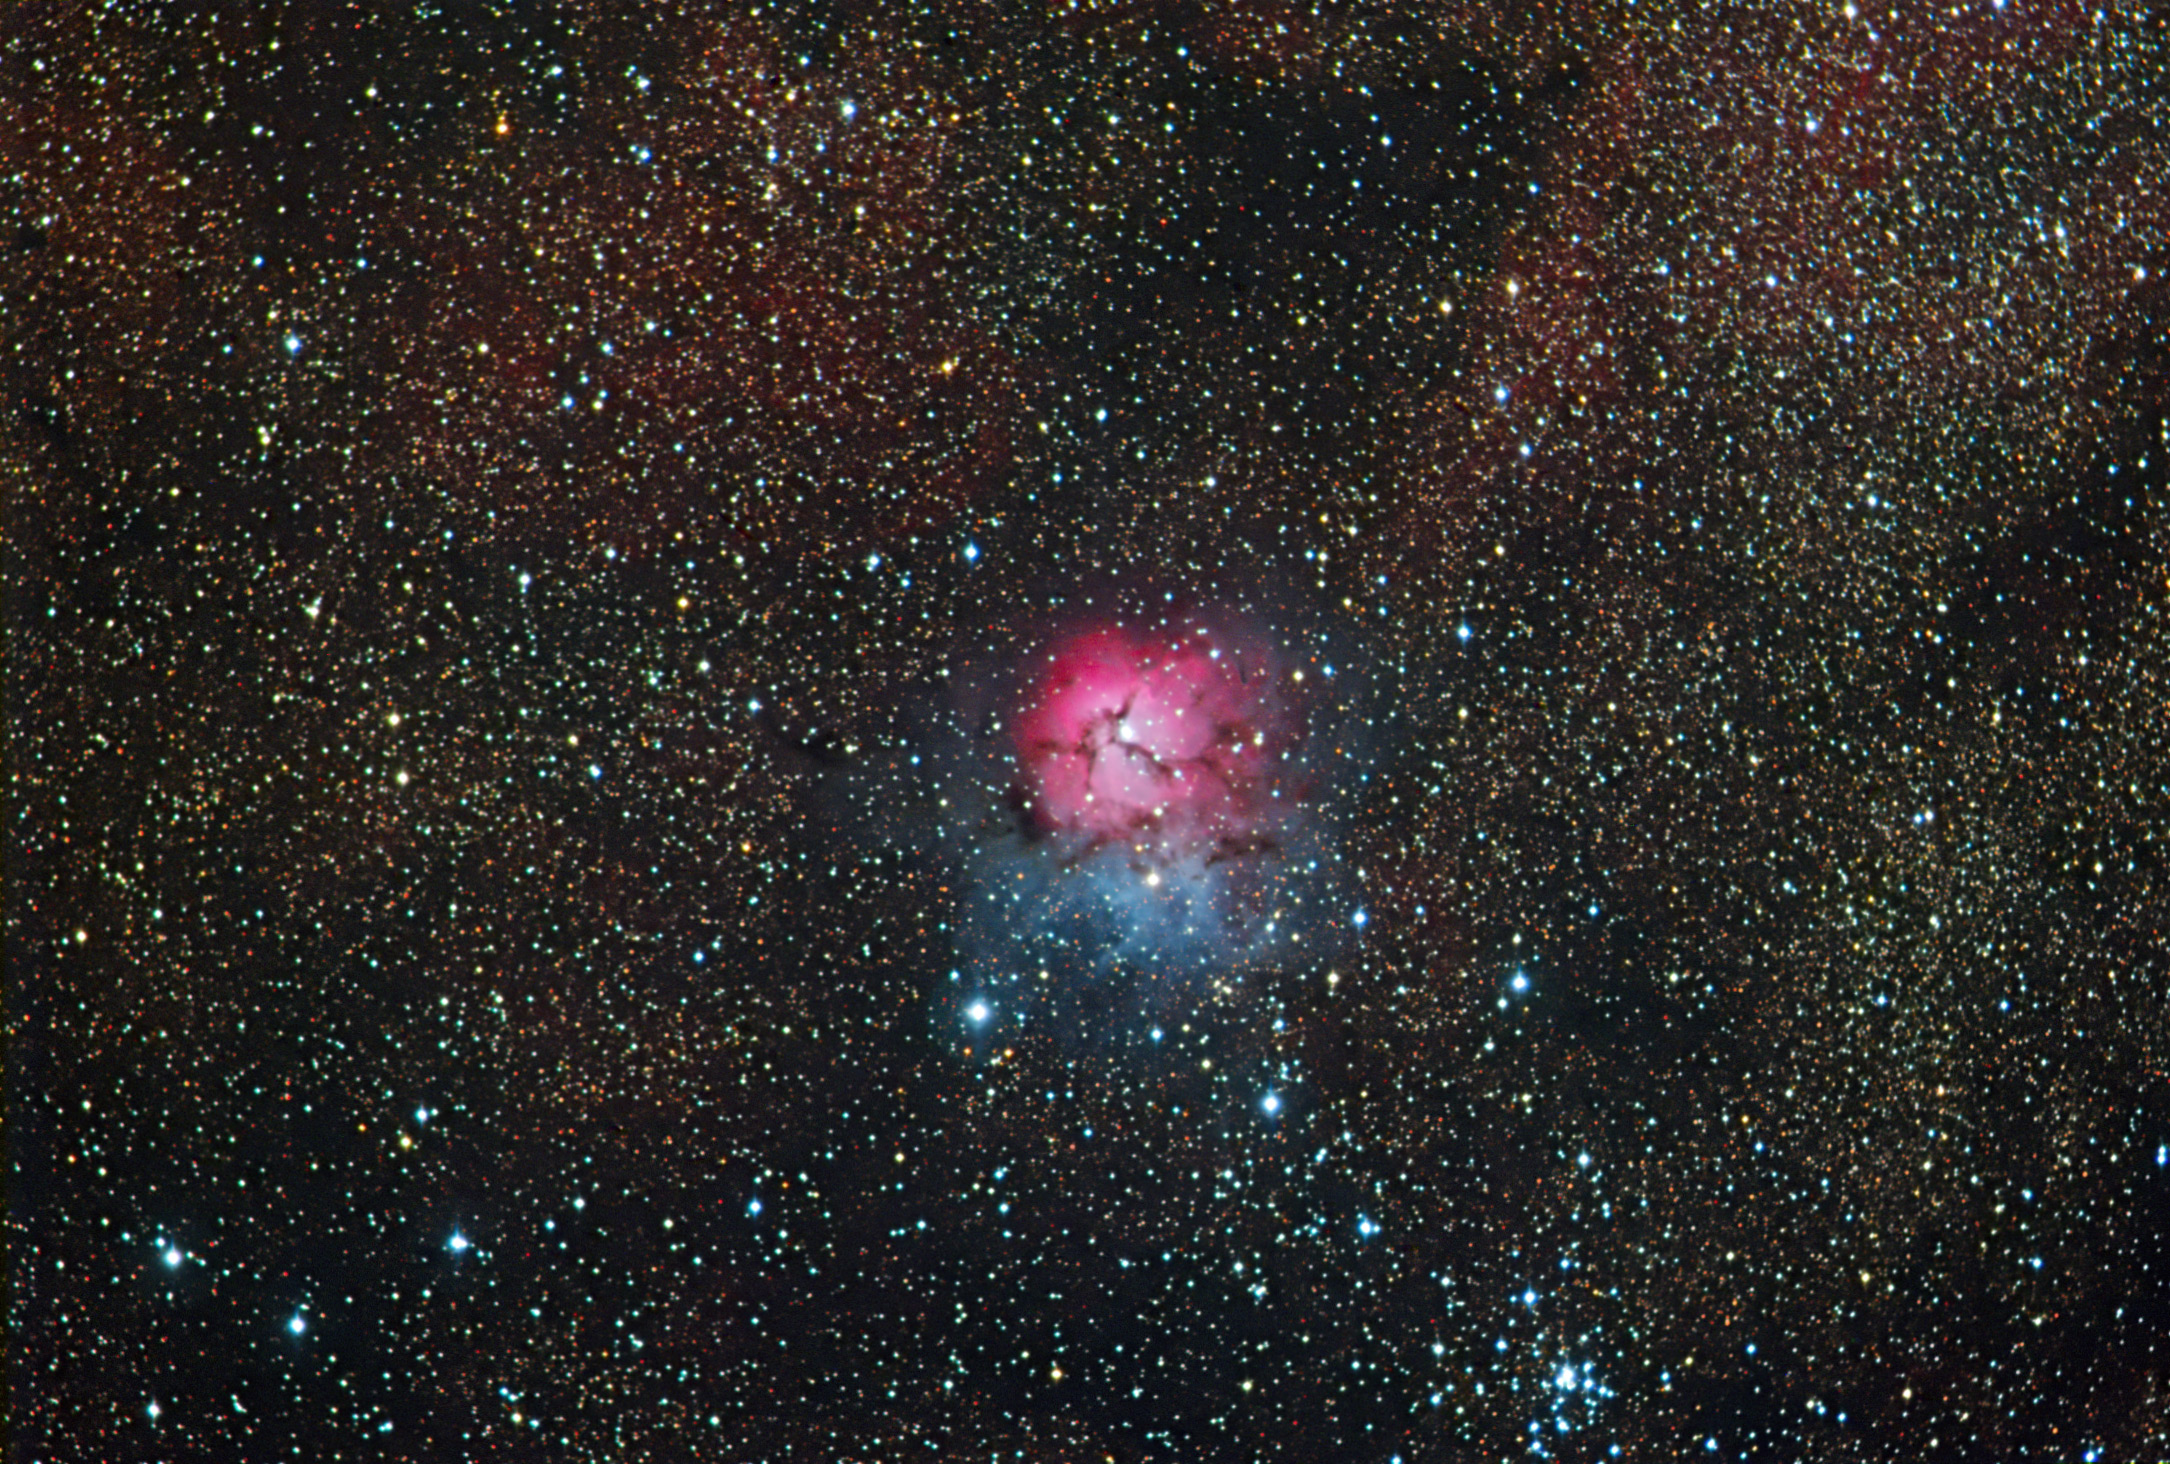 M20 in Sagittarius